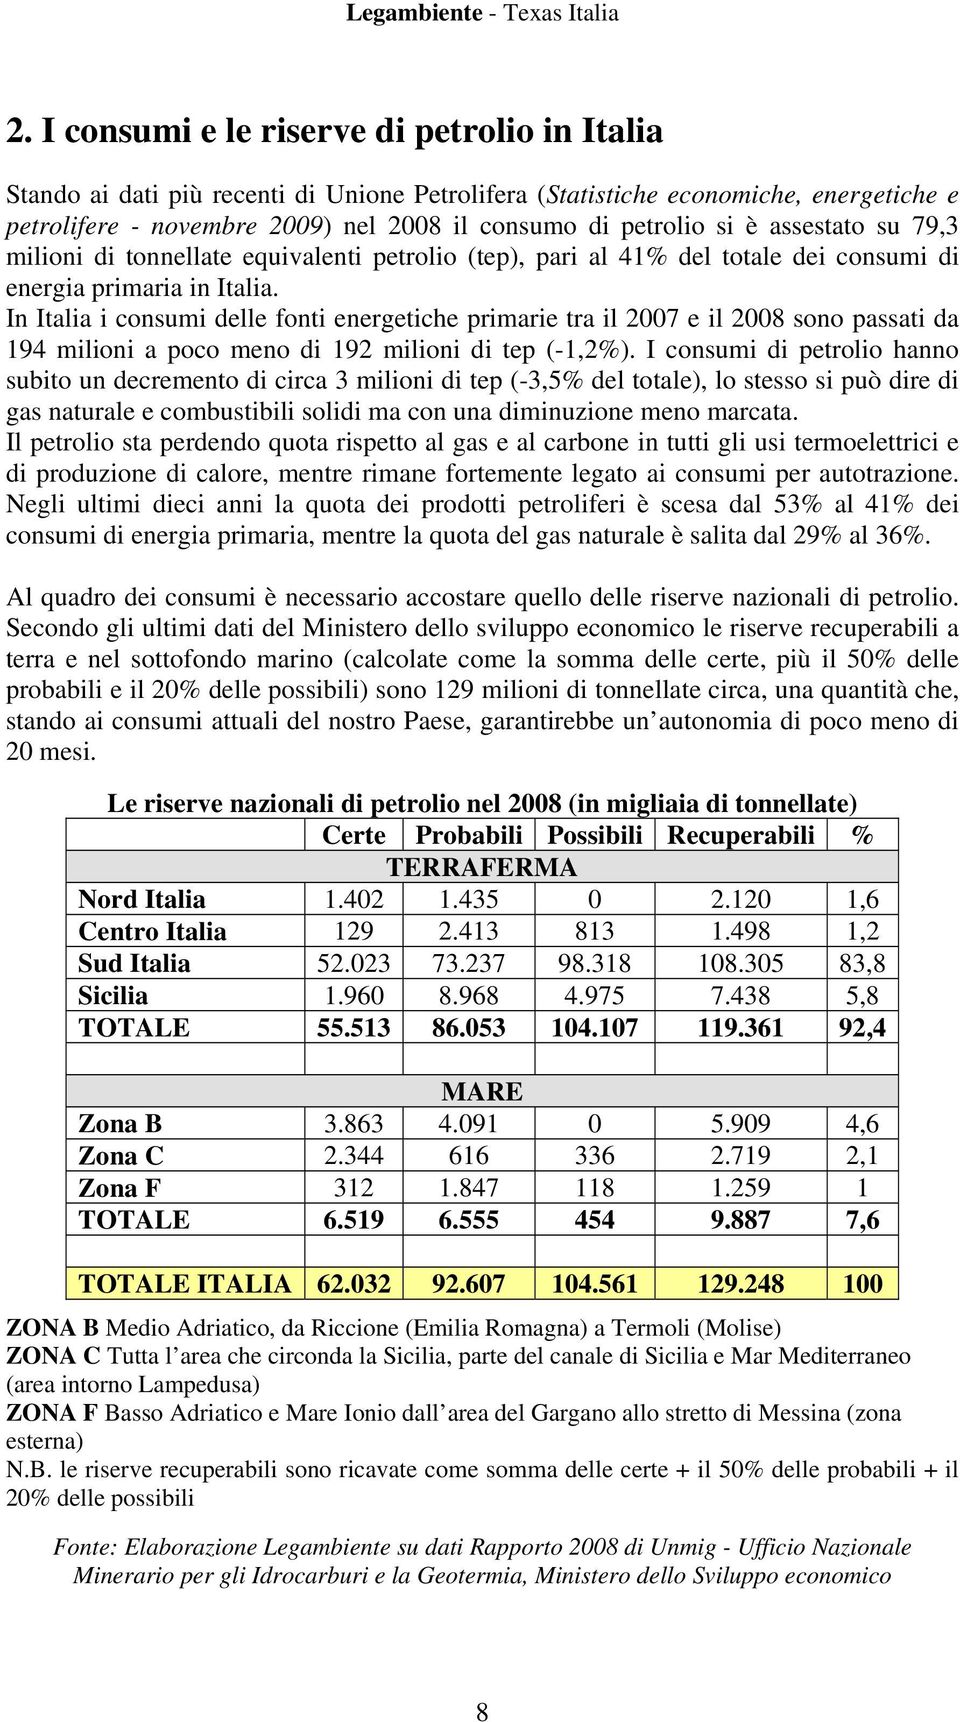 In Italia i consumi delle fonti energetiche primarie tra il 2007 e il 2008 sono passati da 194 milioni a poco meno di 192 milioni di tep (-1,2%).